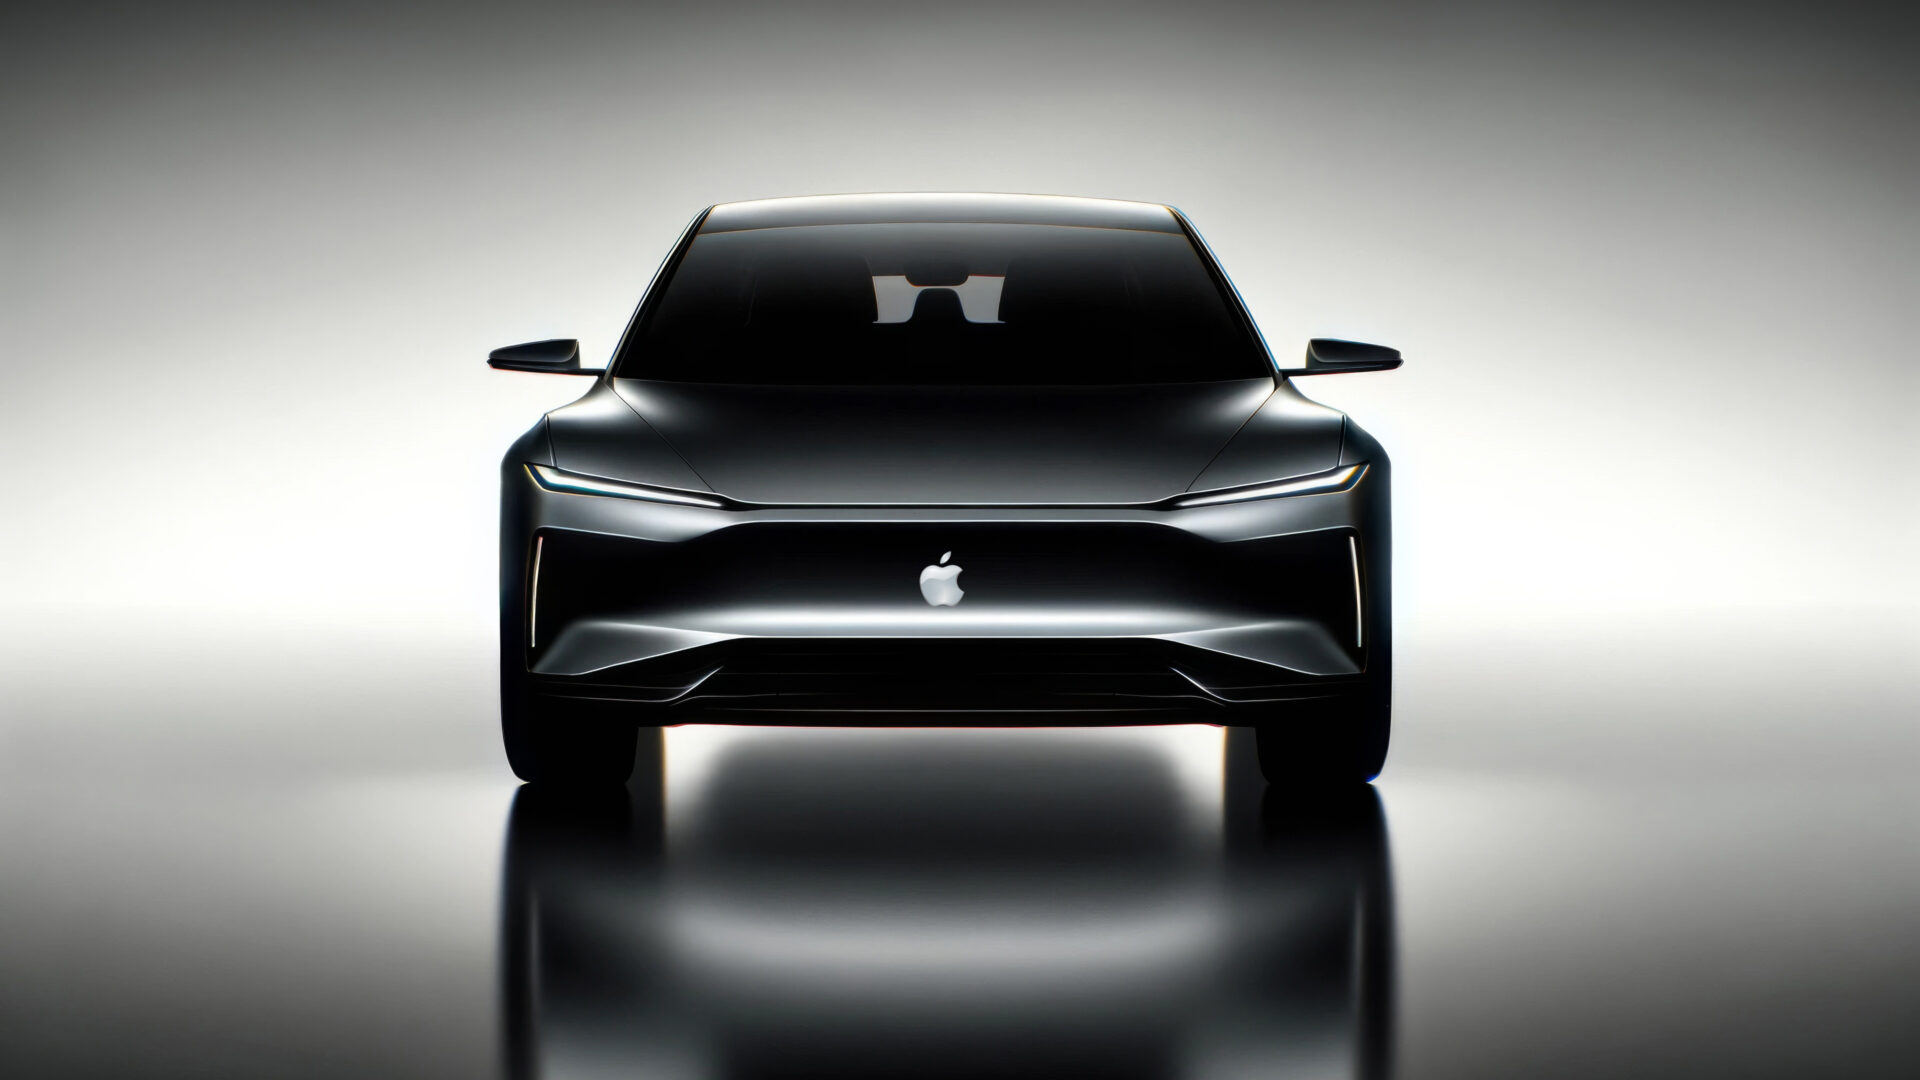 Apple Car: Bliver 2028 året?